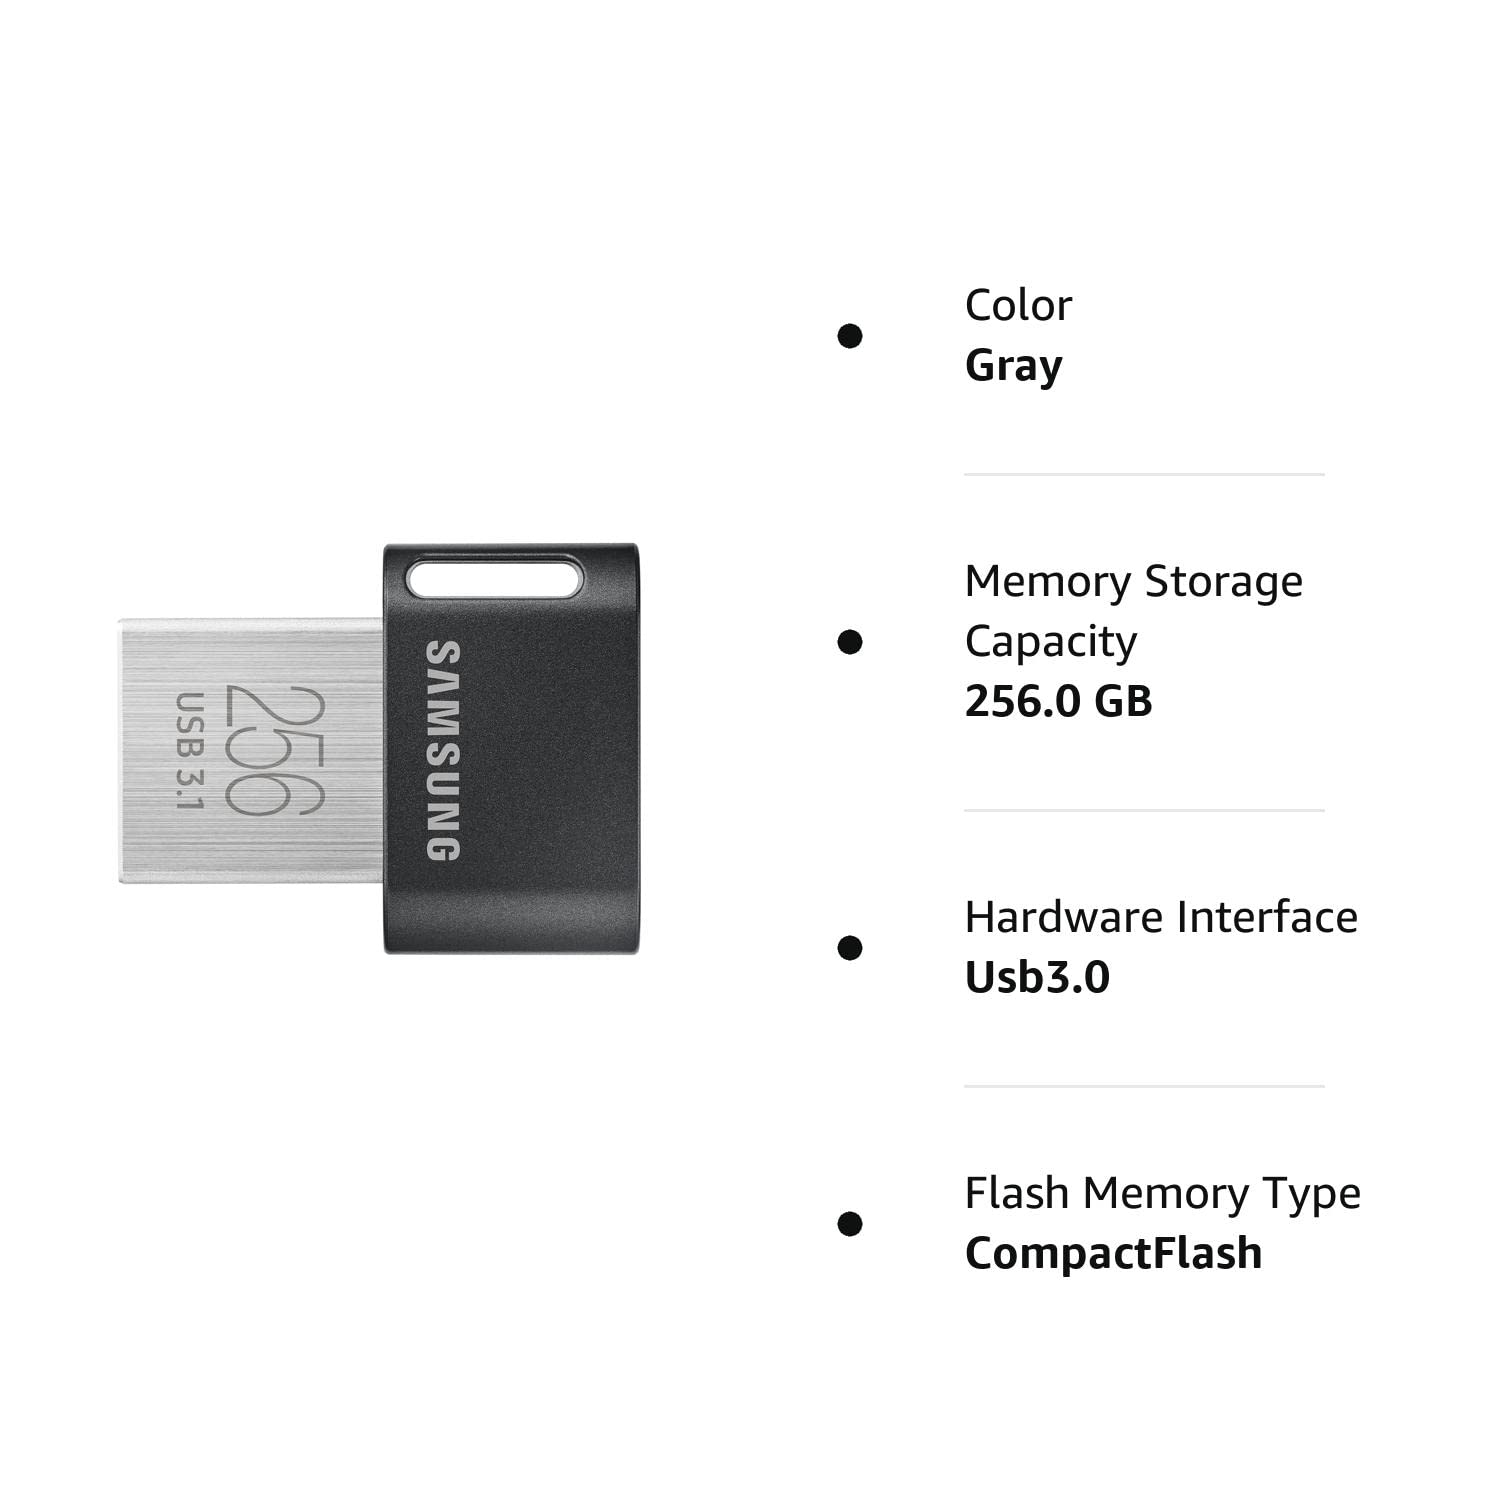 SAMSUNG MUF-256AB/AM FIT Plus 256GB - 400MB/s USB 3.1 Flash Drive, Gunmetal Gray $24.99